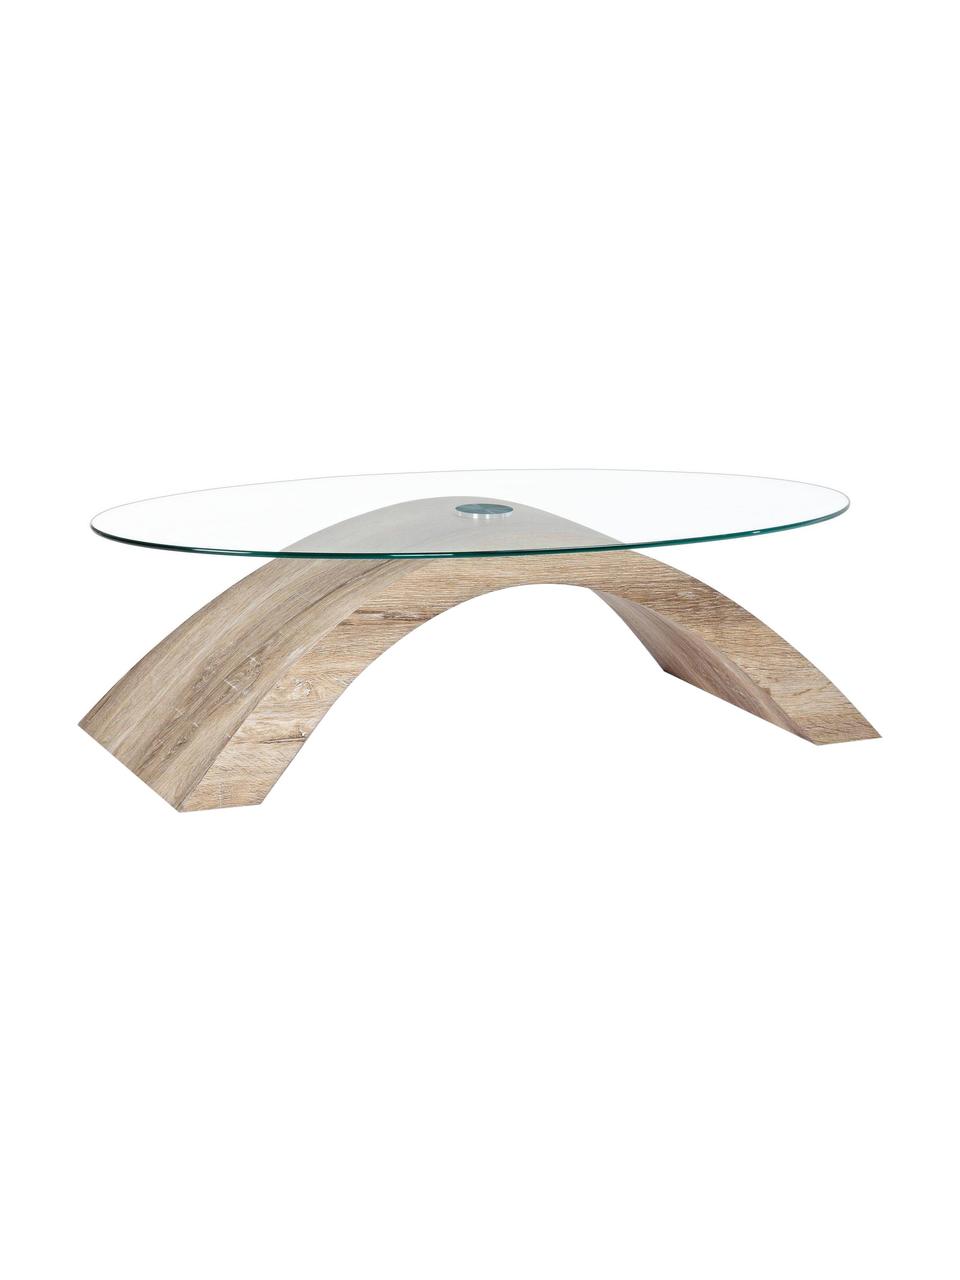 Konferenční stolek Kenya, Transparentní, světle hnědá, Š 110 cm, H 60 cm